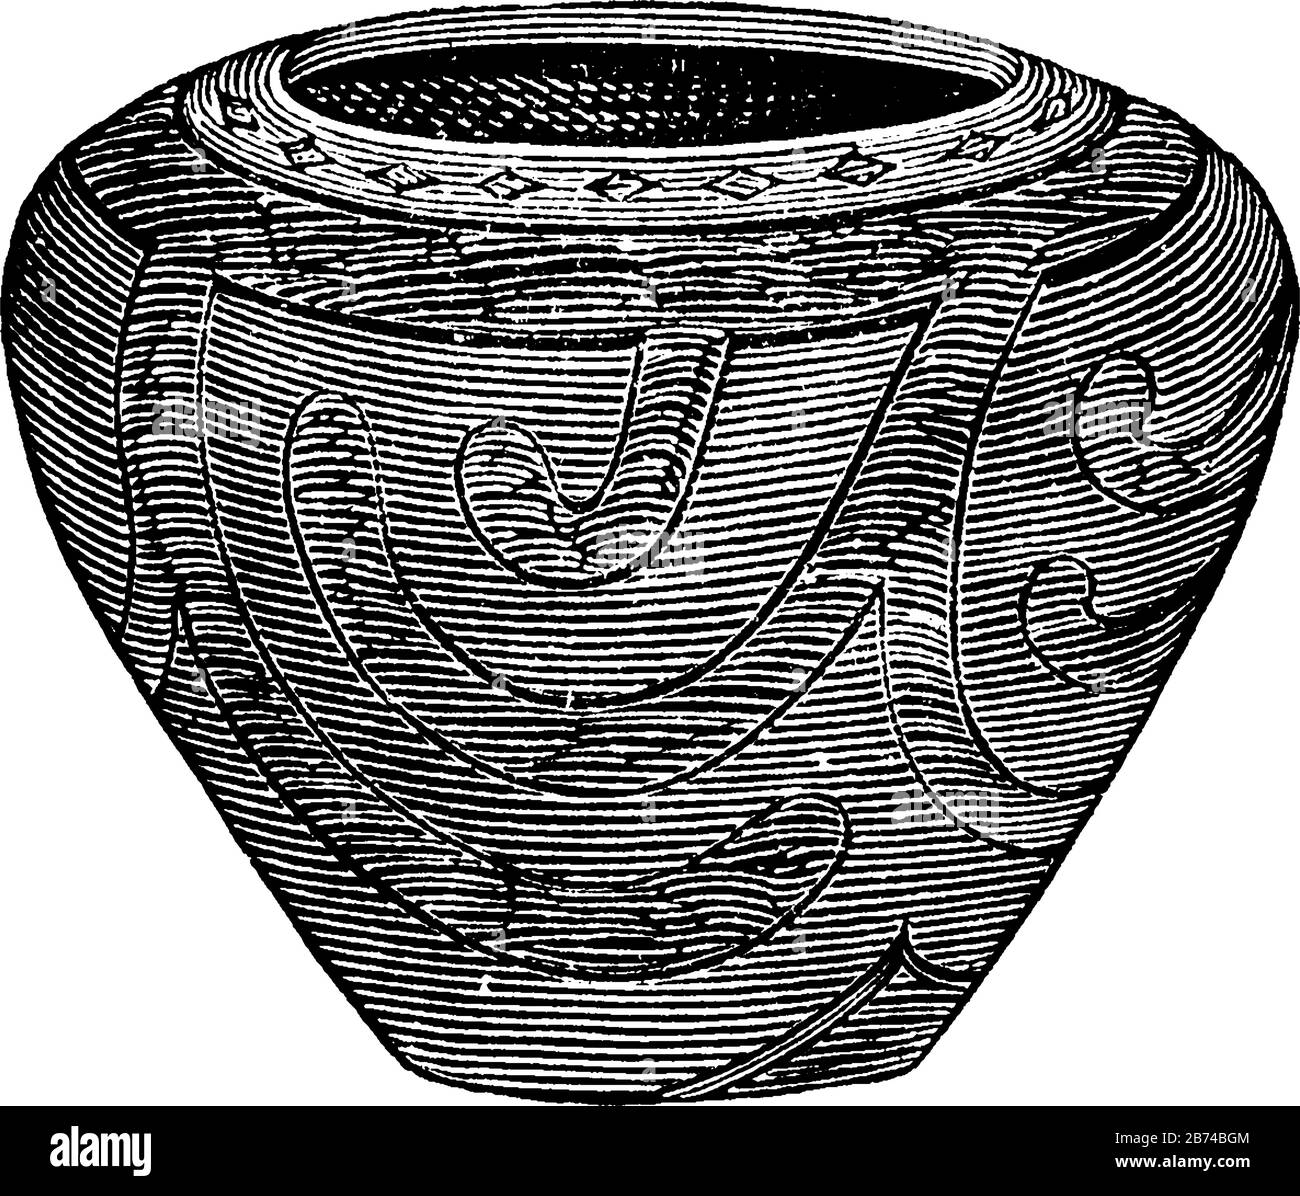 Vaso trovato nelle aree dei costruttori di tumulo, disegno linea vintage o illustrazione incisione. Illustrazione Vettoriale